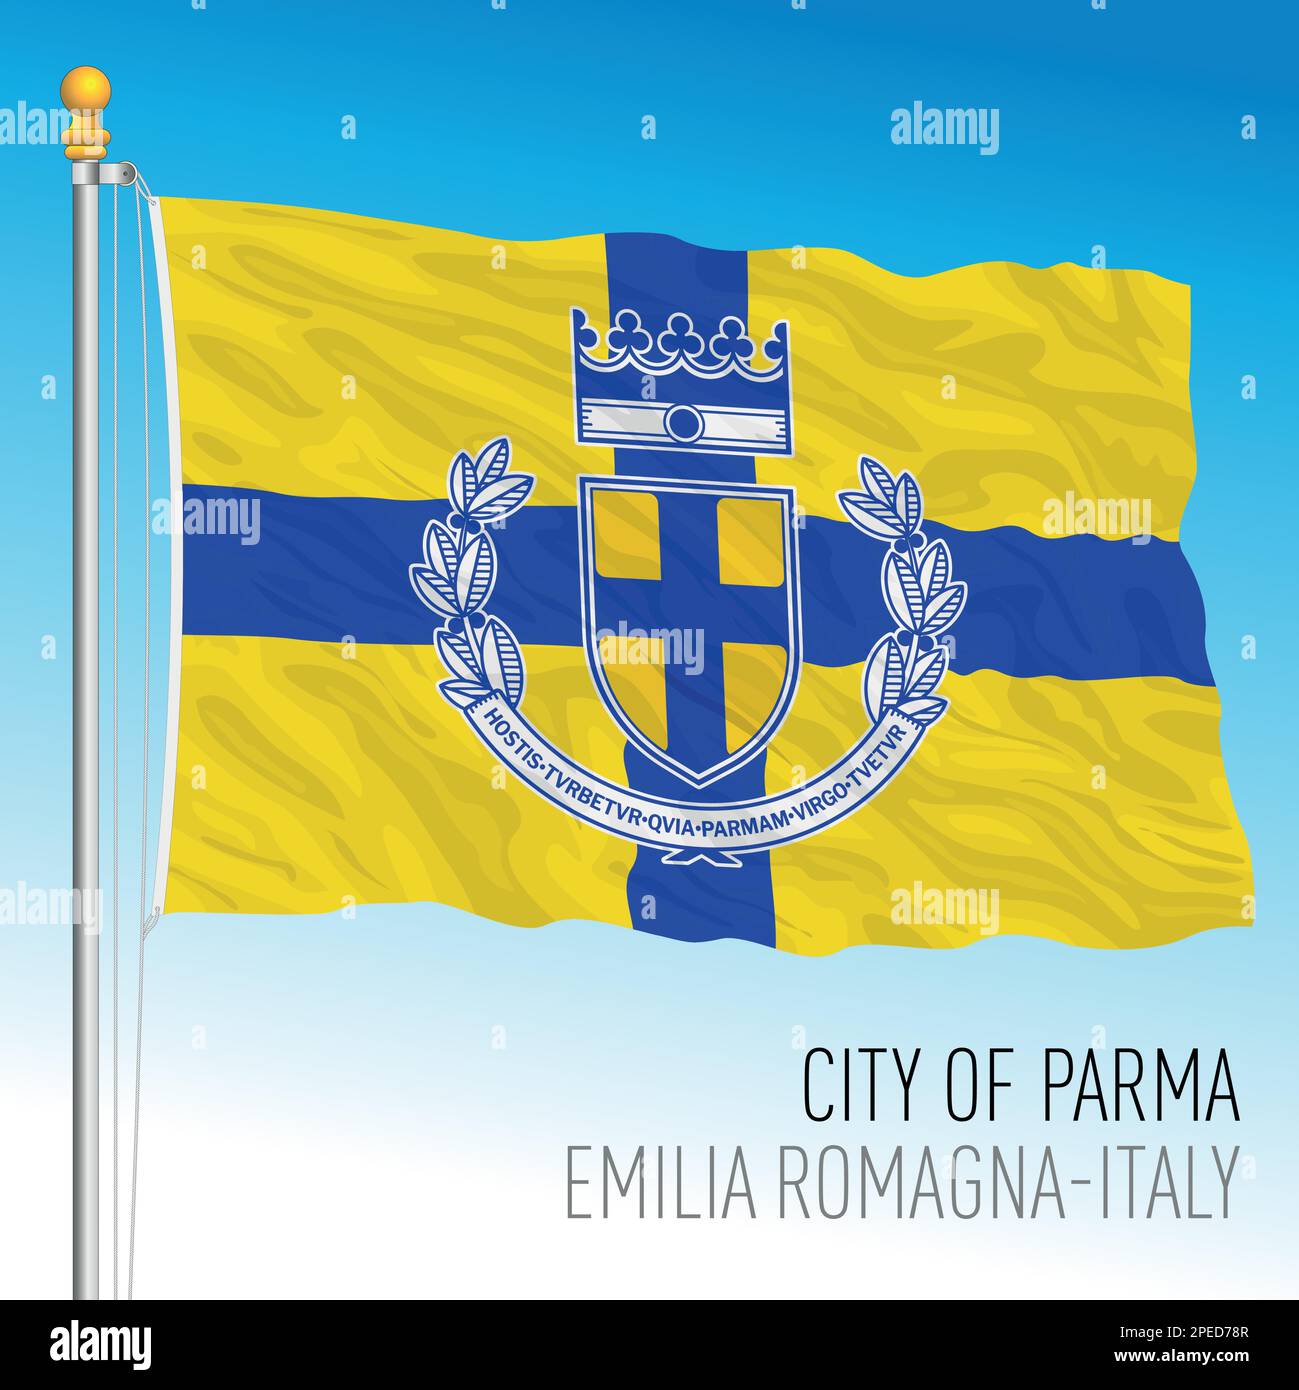 Parma Flagge, Stadt Emilia Romagna, Italien, Farben und Wappen, Vektordarstellung Stock Vektor